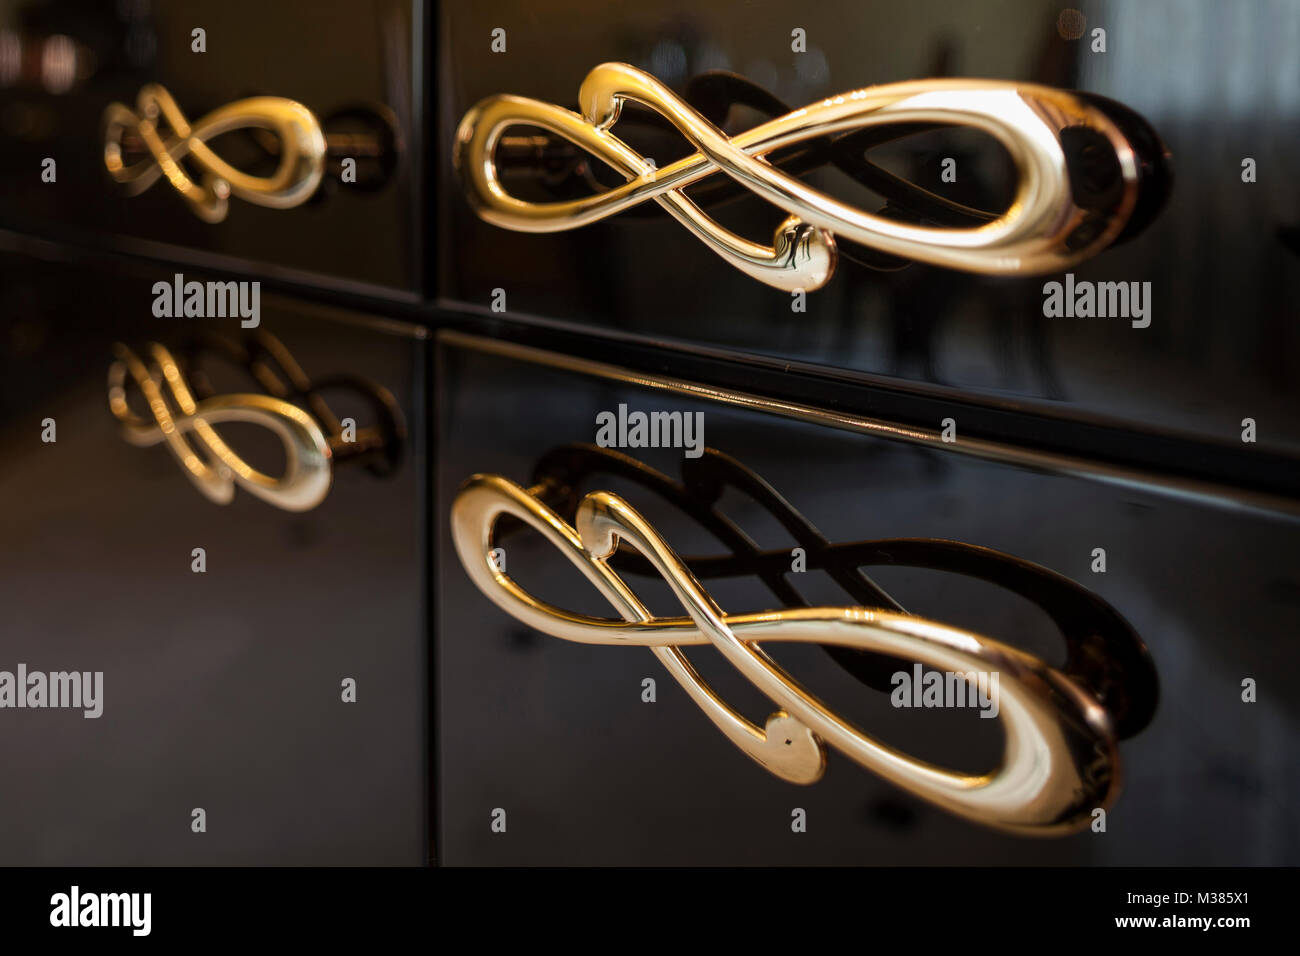 Maniglie per mobili immagini e fotografie stock ad alta risoluzione - Alamy